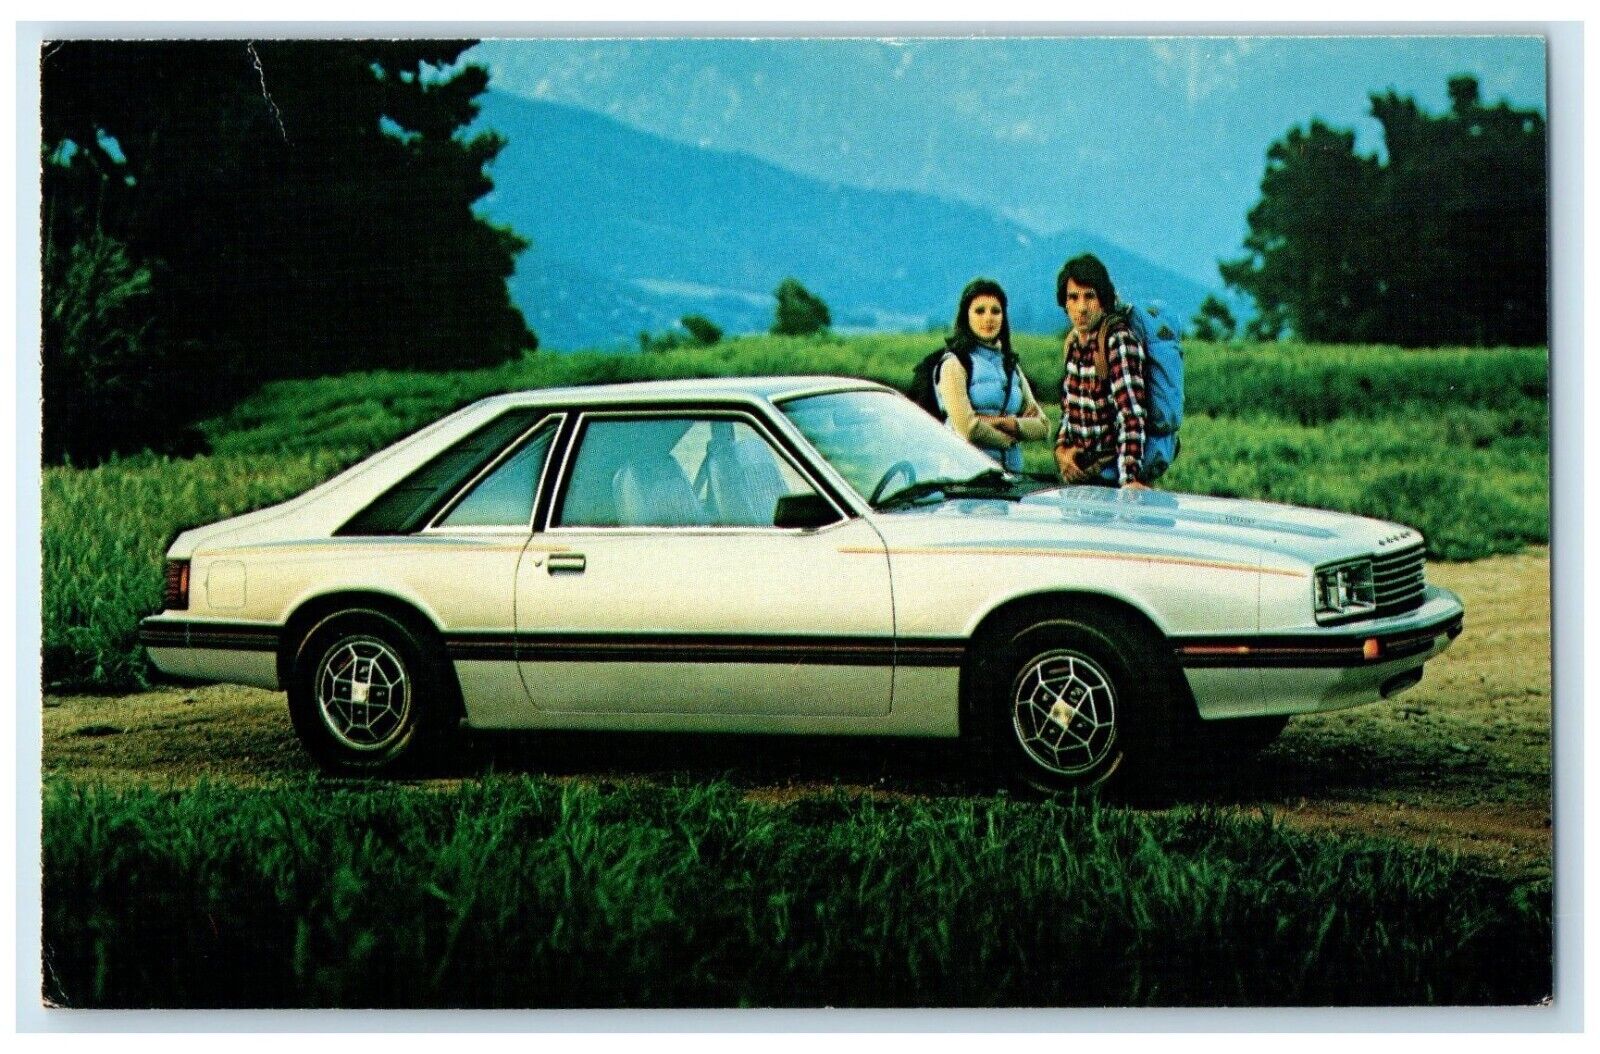 1979 Mercury Capri McCauley Motors Dealership Merced California CA Postcard